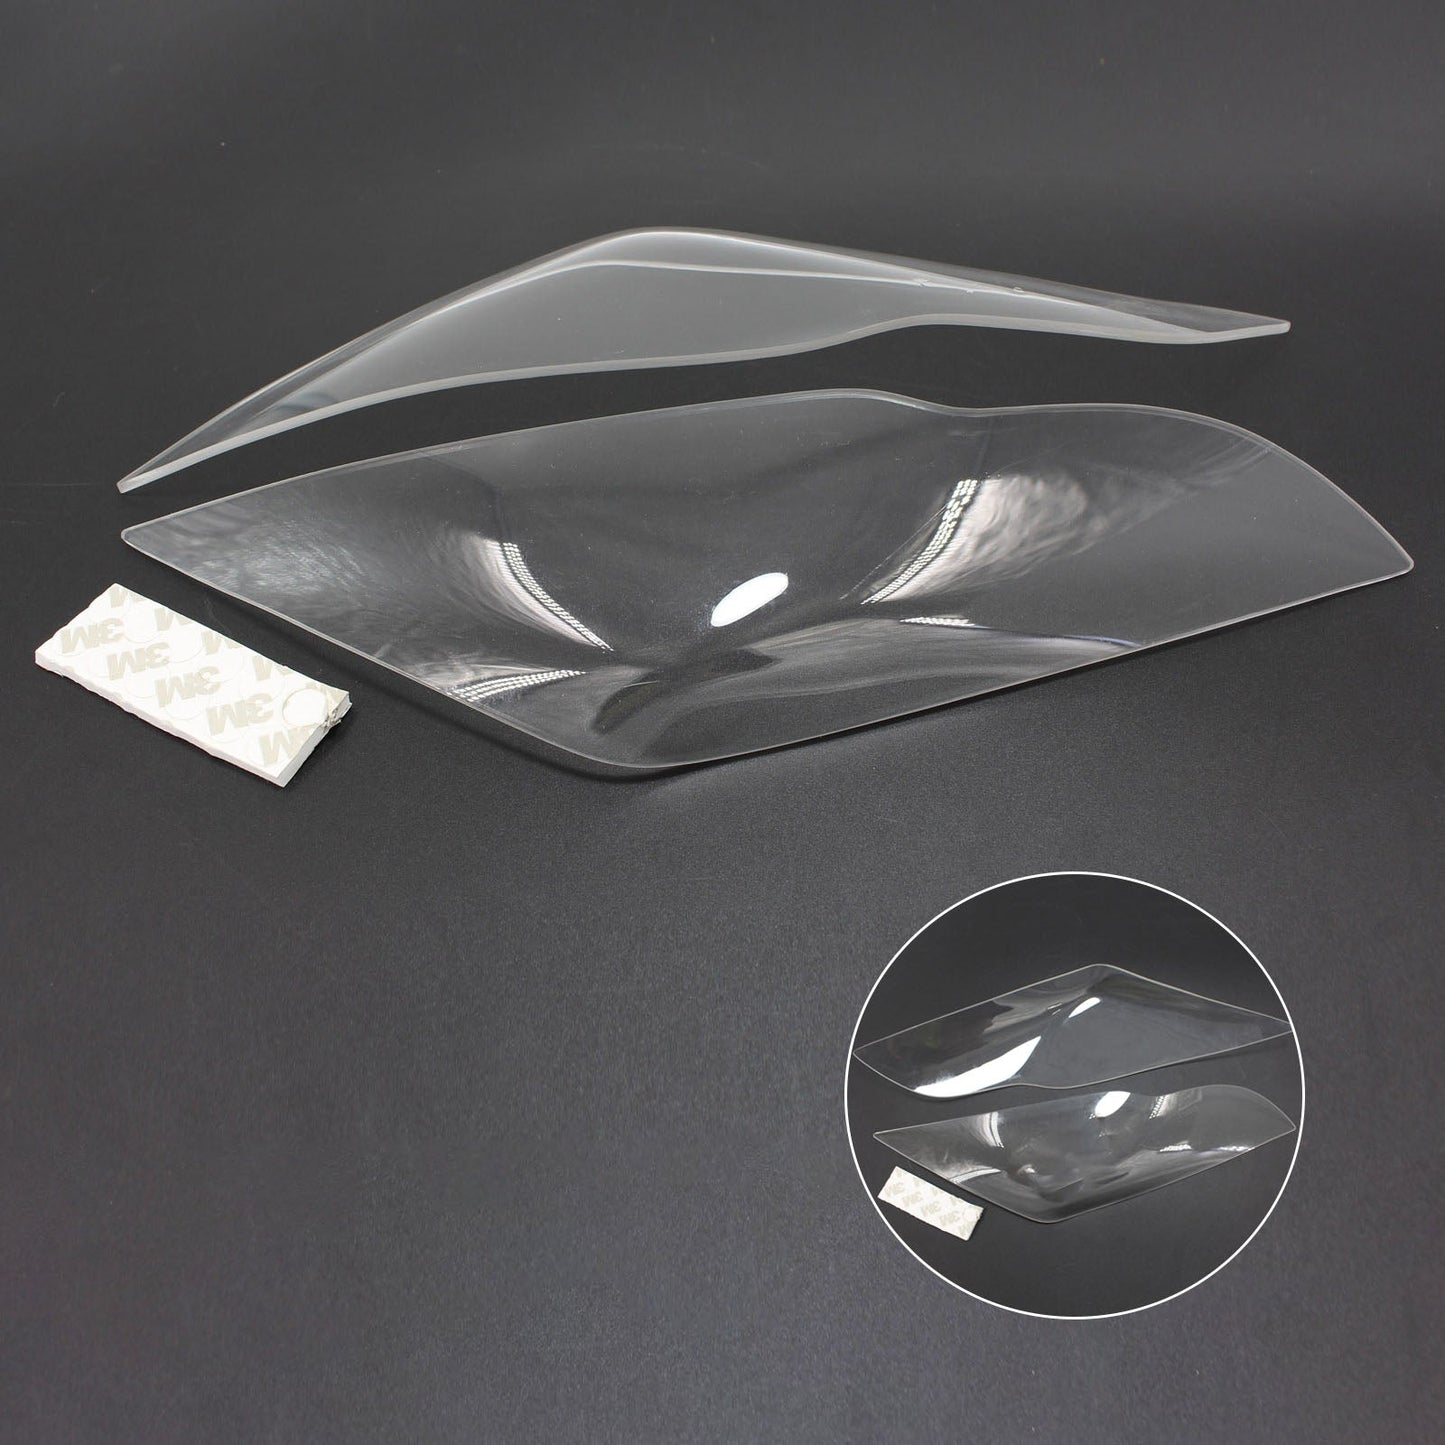 Protezione lente faro anteriore adatta per Kawasaki Zx-10R Zx 10R 2011-2015 fumo generico